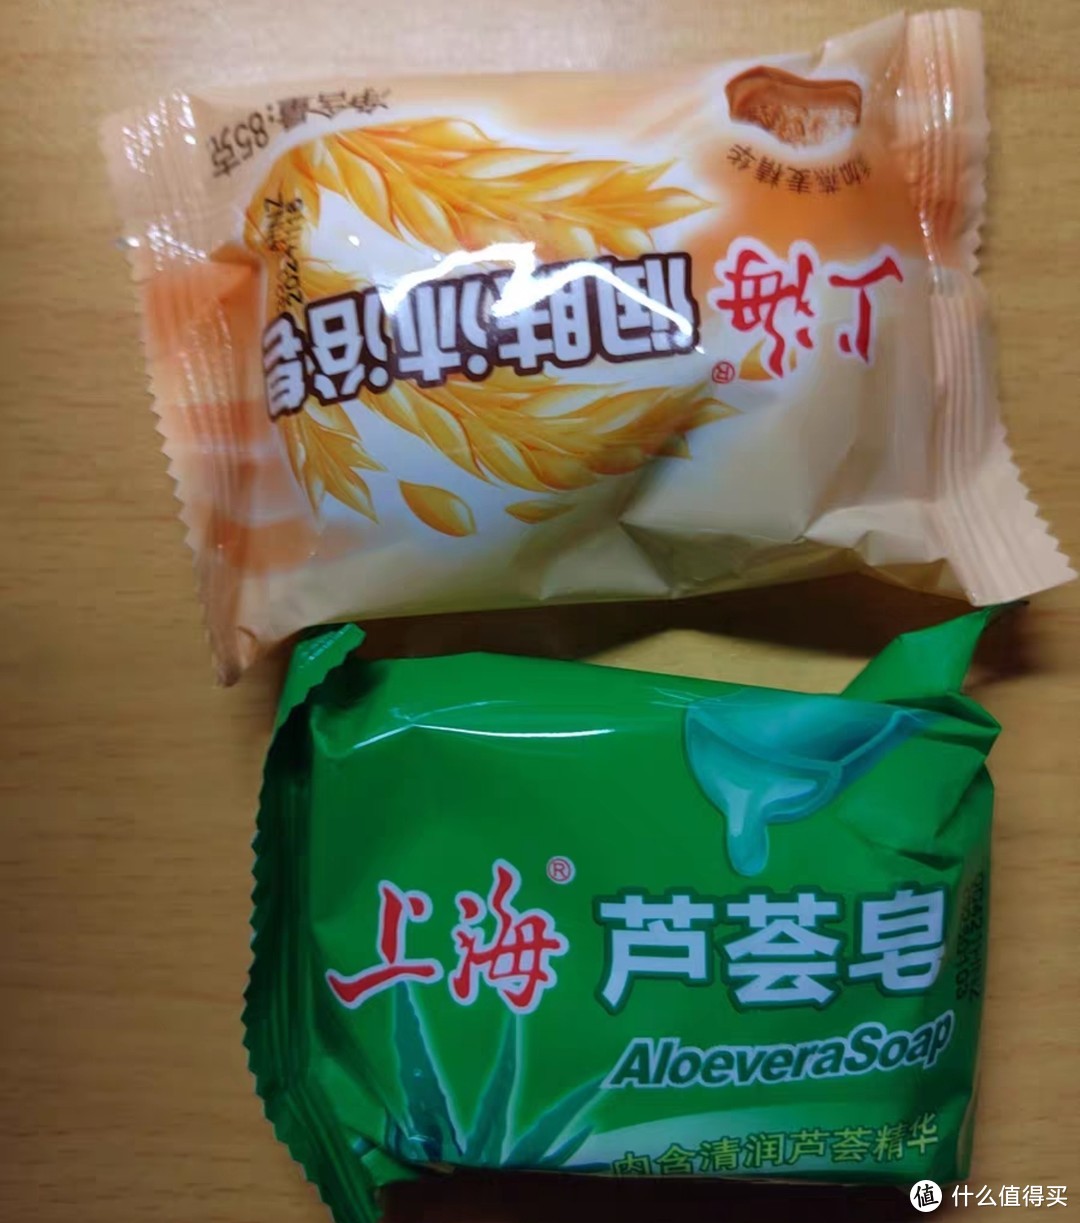 国货上海肥皂:硫磺皂等六款肥皂推荐